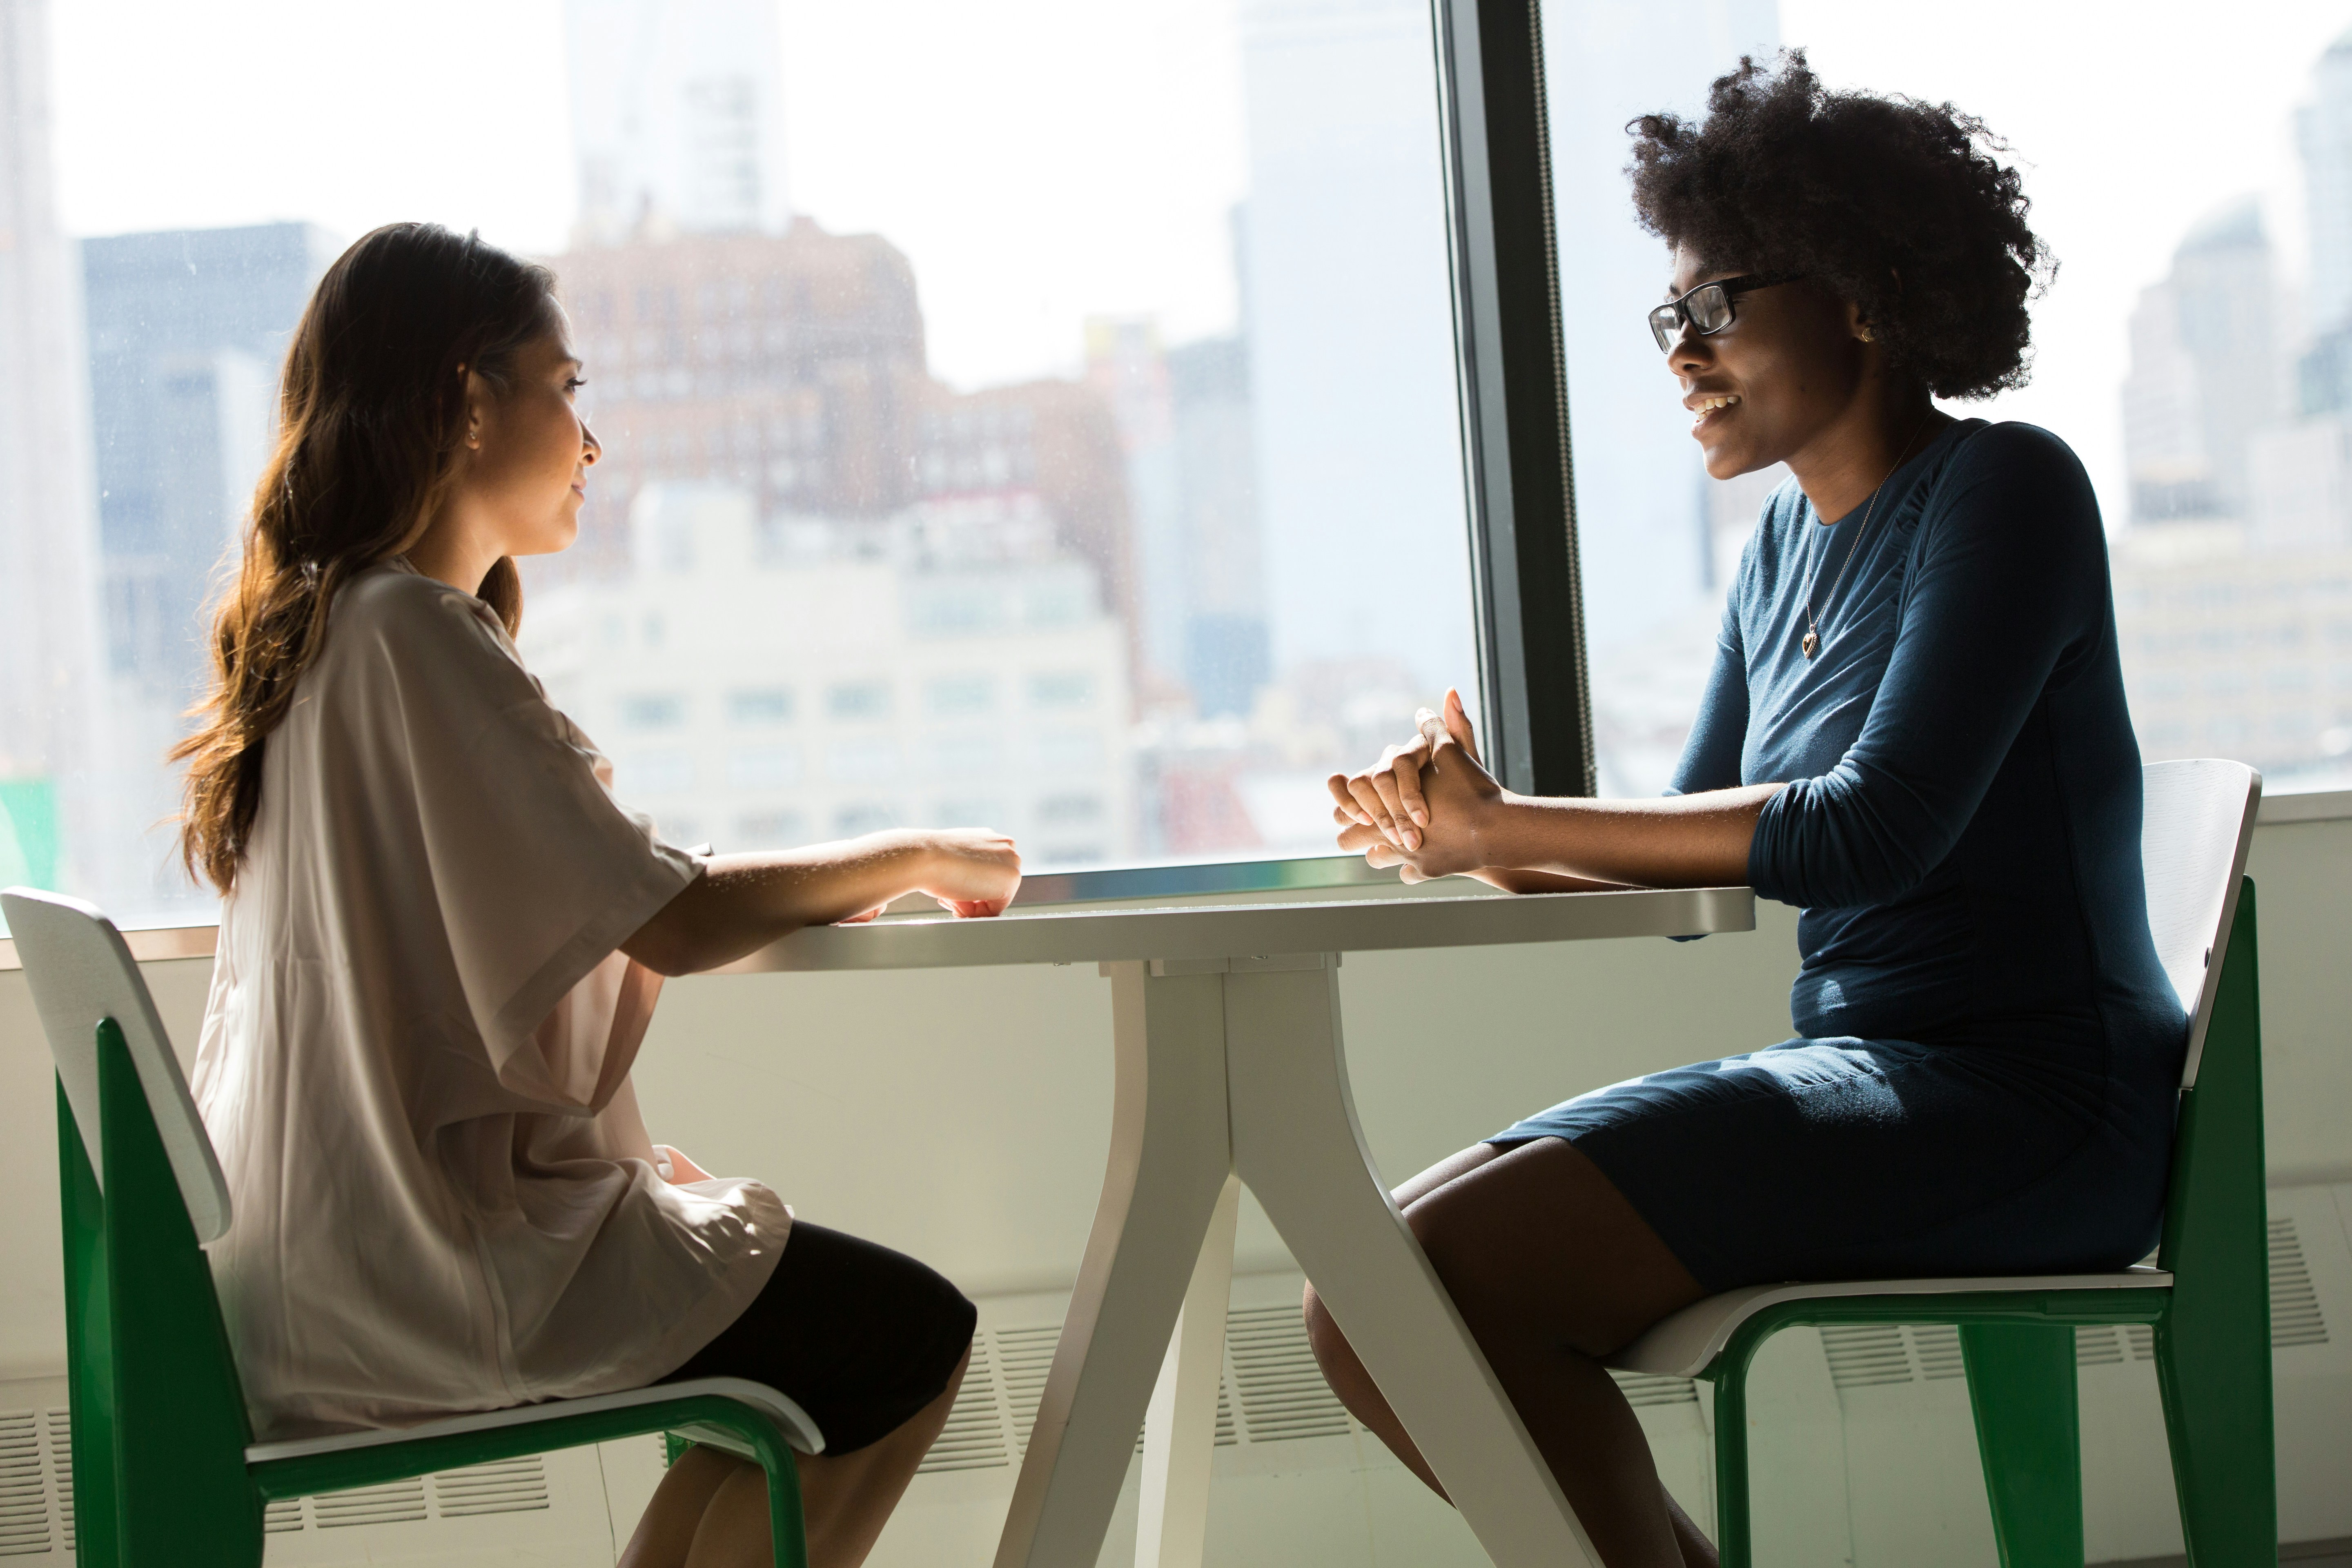 Na imagem é possível ver duas mulheres jovens sentadas em uma mesa, uma de frente para outra, representando uma conversa